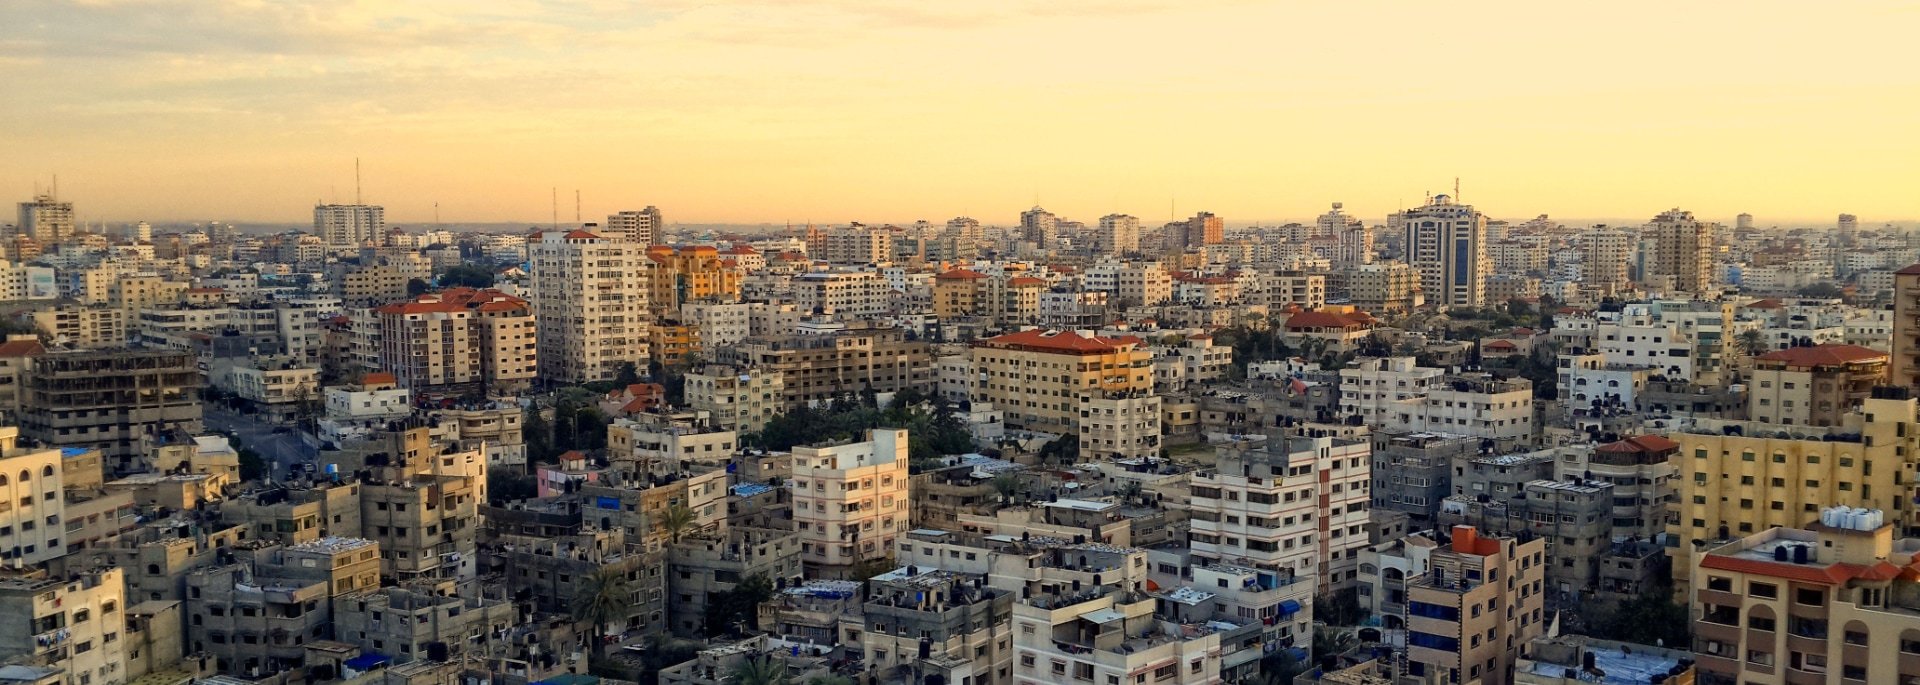 हमासद्वारा इजरायली–अमेरिकी बन्धकको नयाँ भिडियो सार्वजनिक